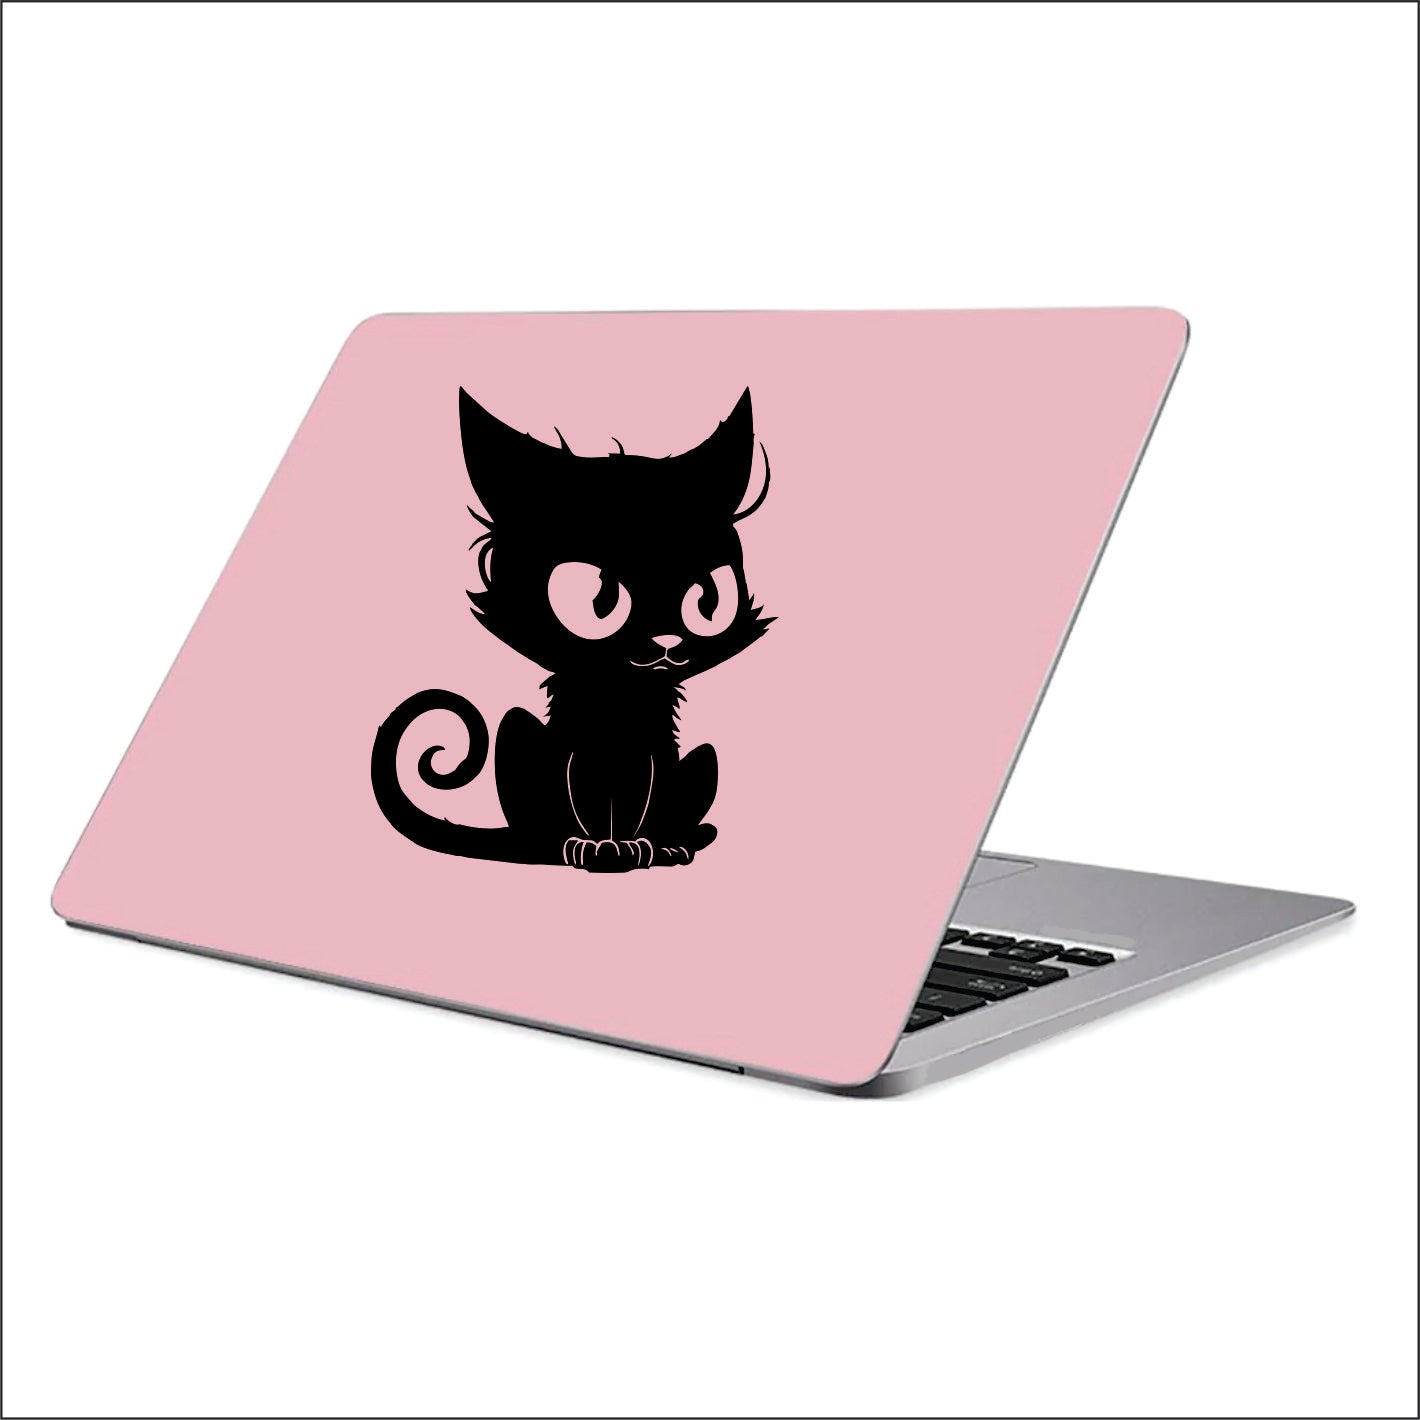 Cute Black Cat Vinyl Decal Sticker